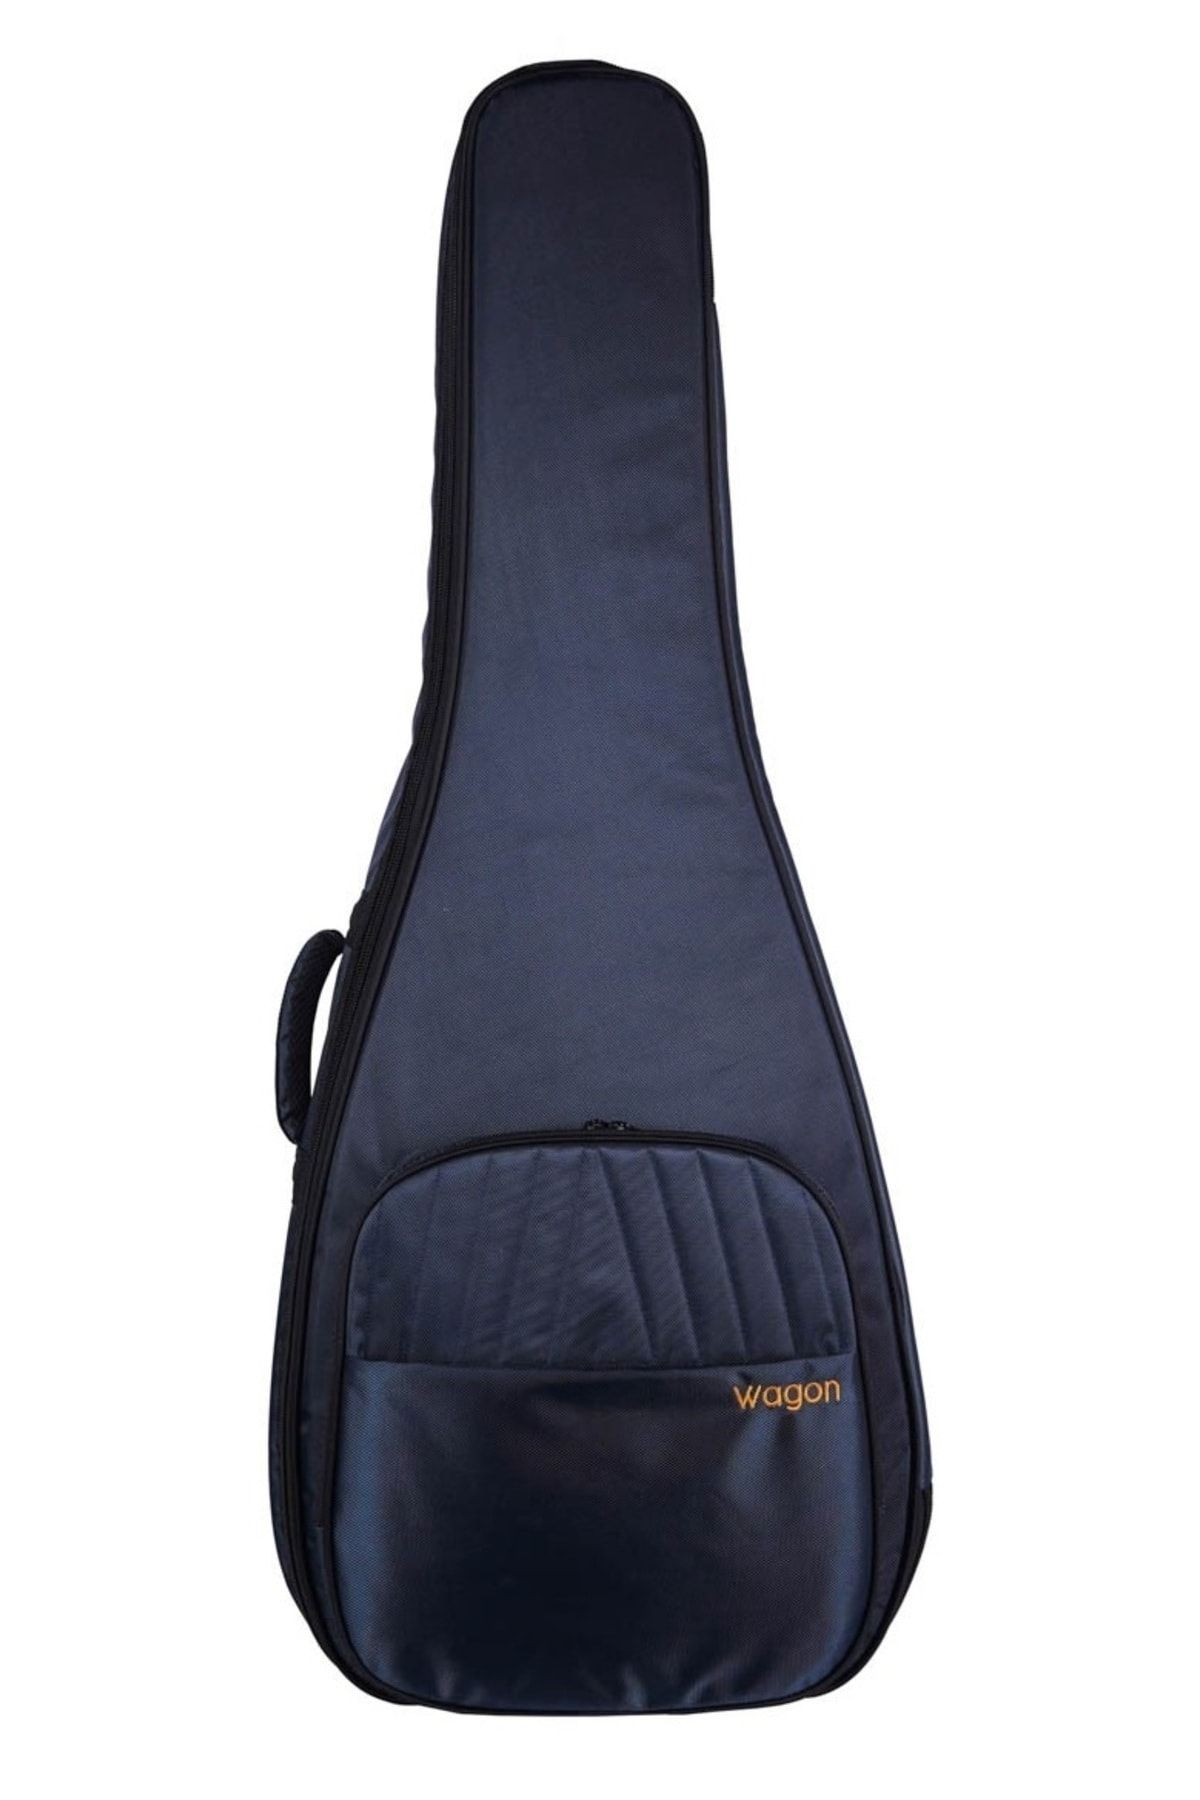 Wagon Case 04 Serisi 04-ACG Lacivert Akustik Gitar Çantası